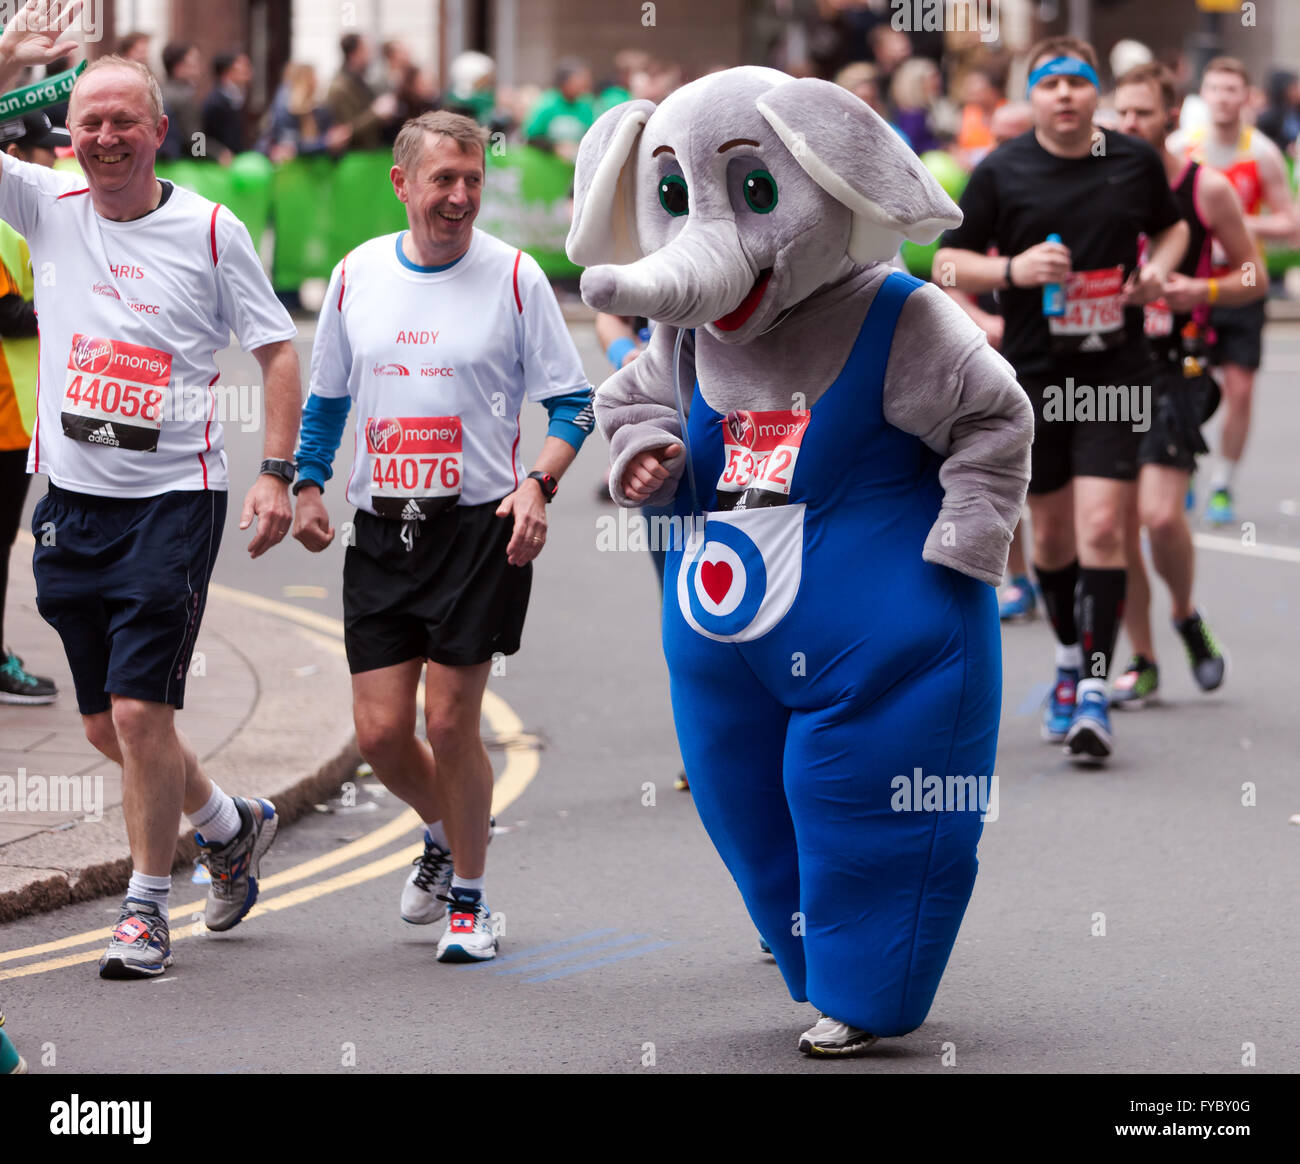 Darrel Keane laufen verkleidet als Ben Elephant, das Maskottchen für die RAF Benevolent Fund in 2016-London-Marathon Stockfoto